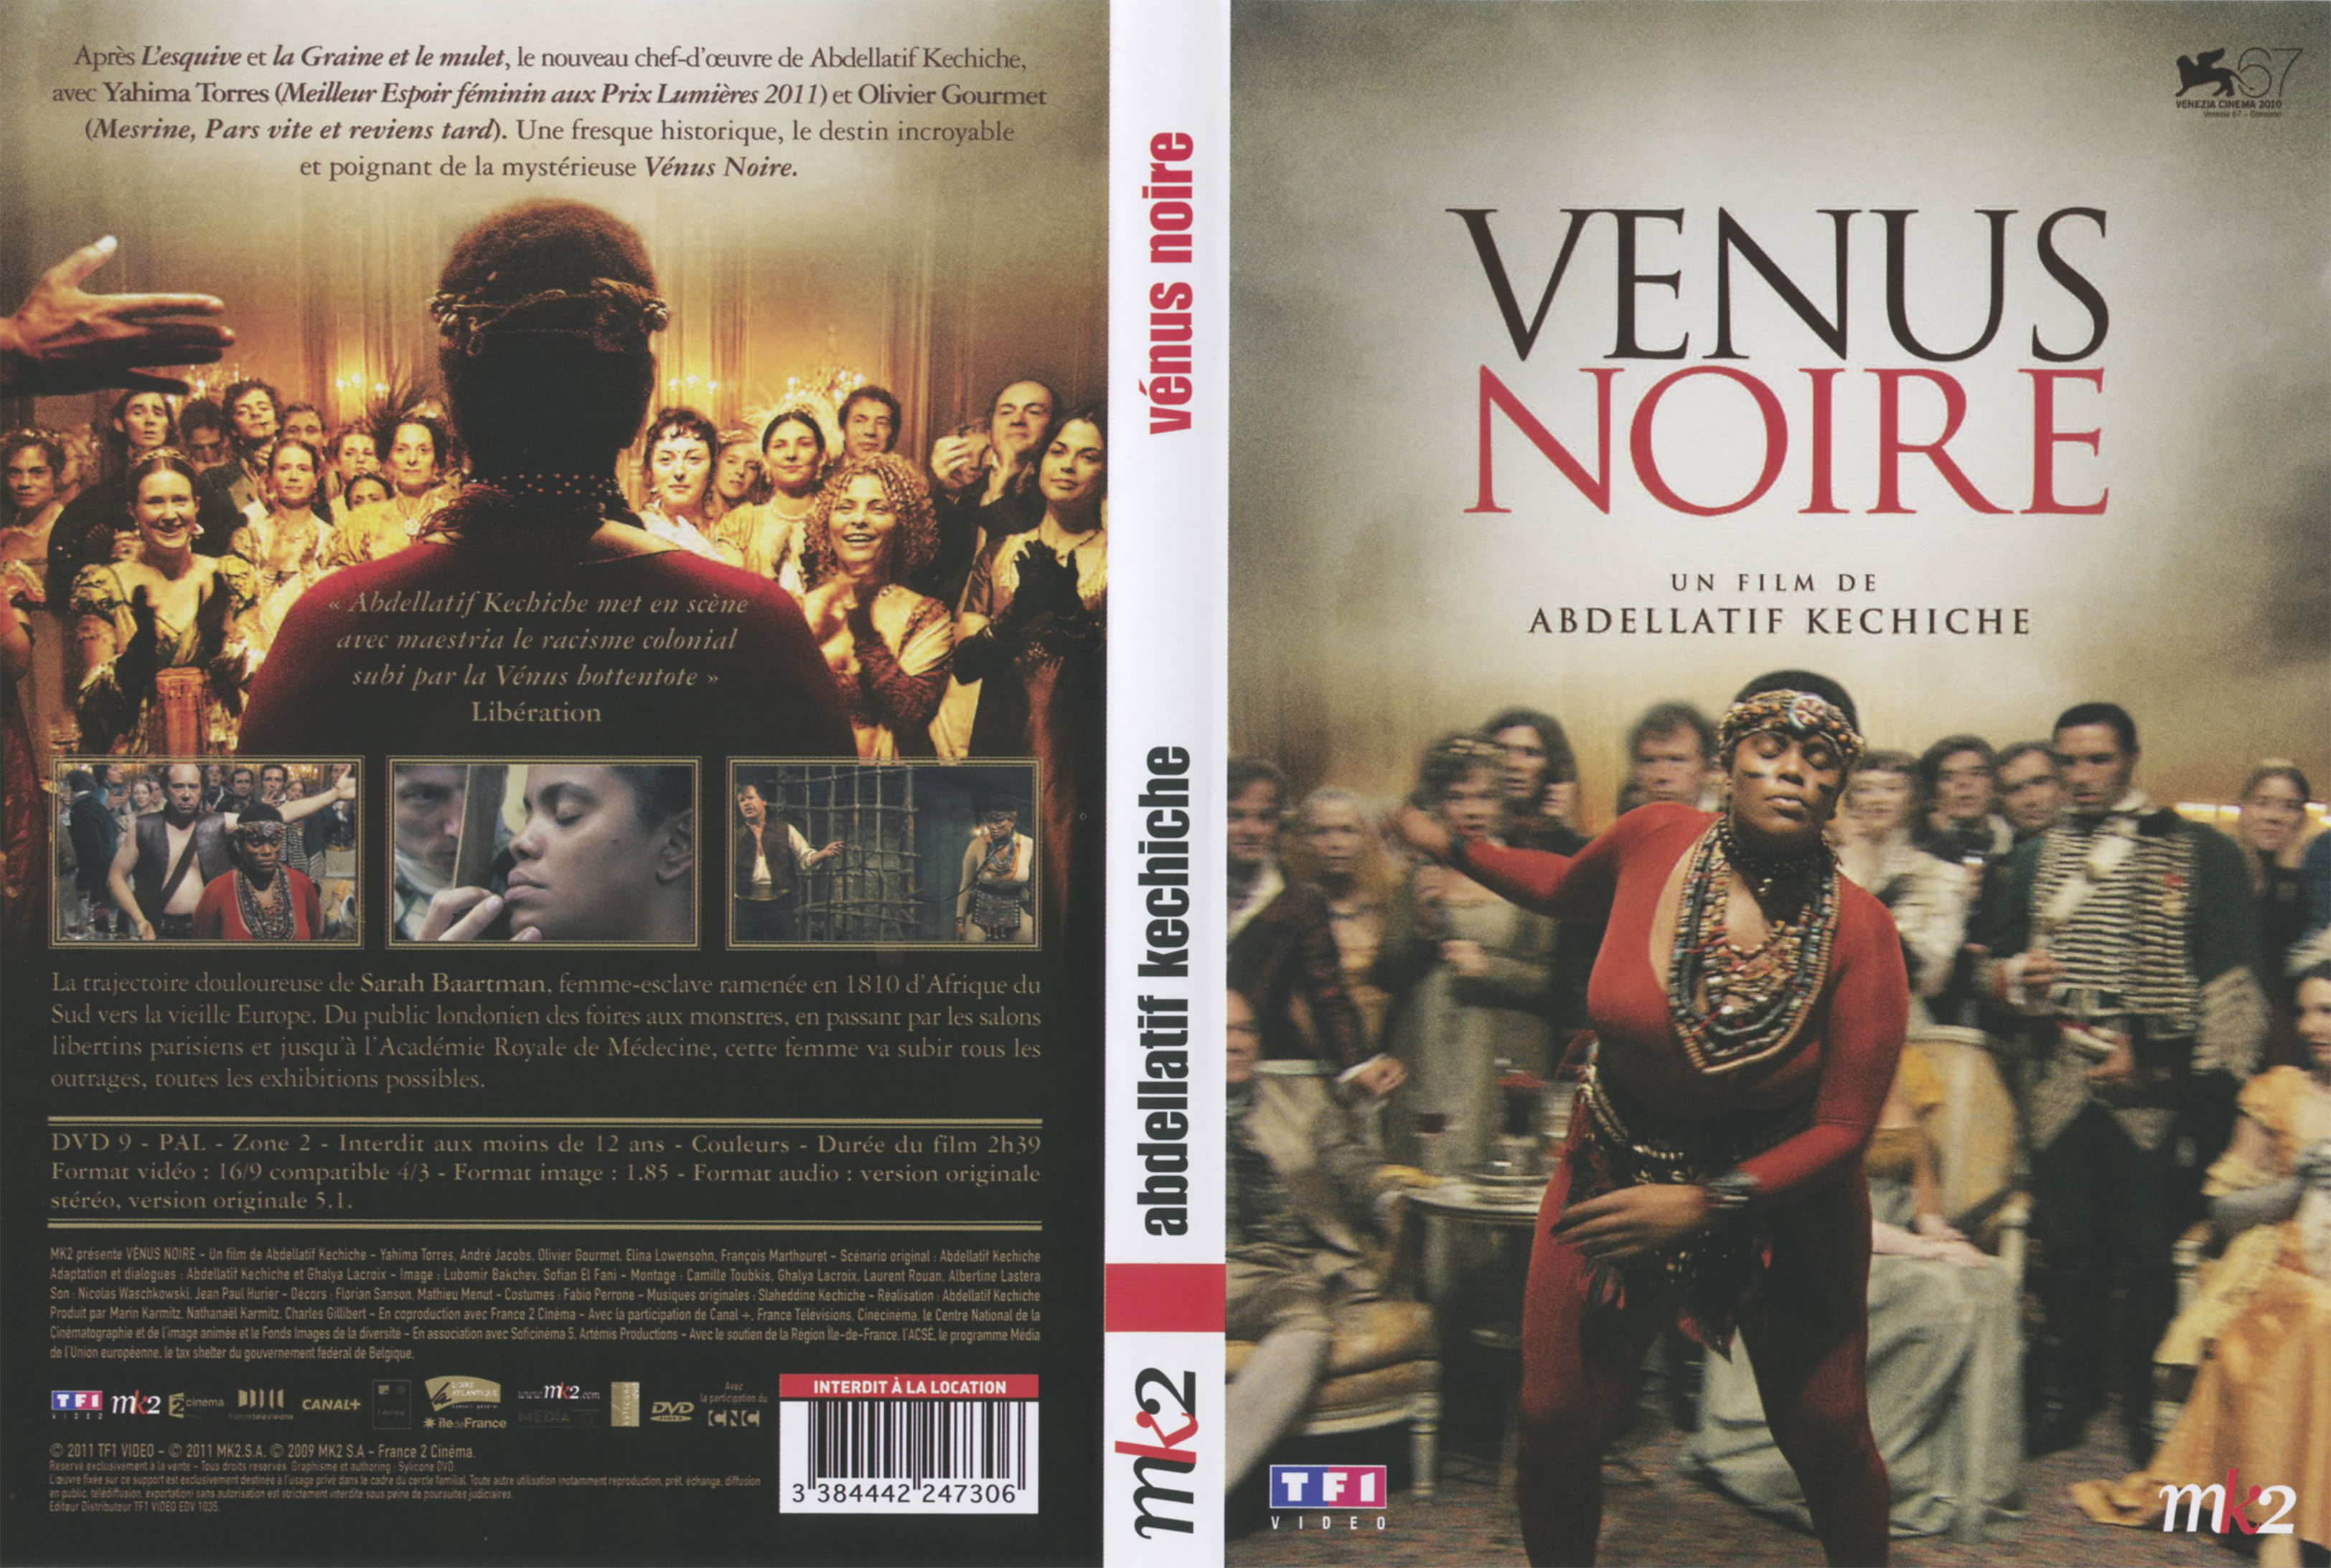 Jaquette DVD Venus noire